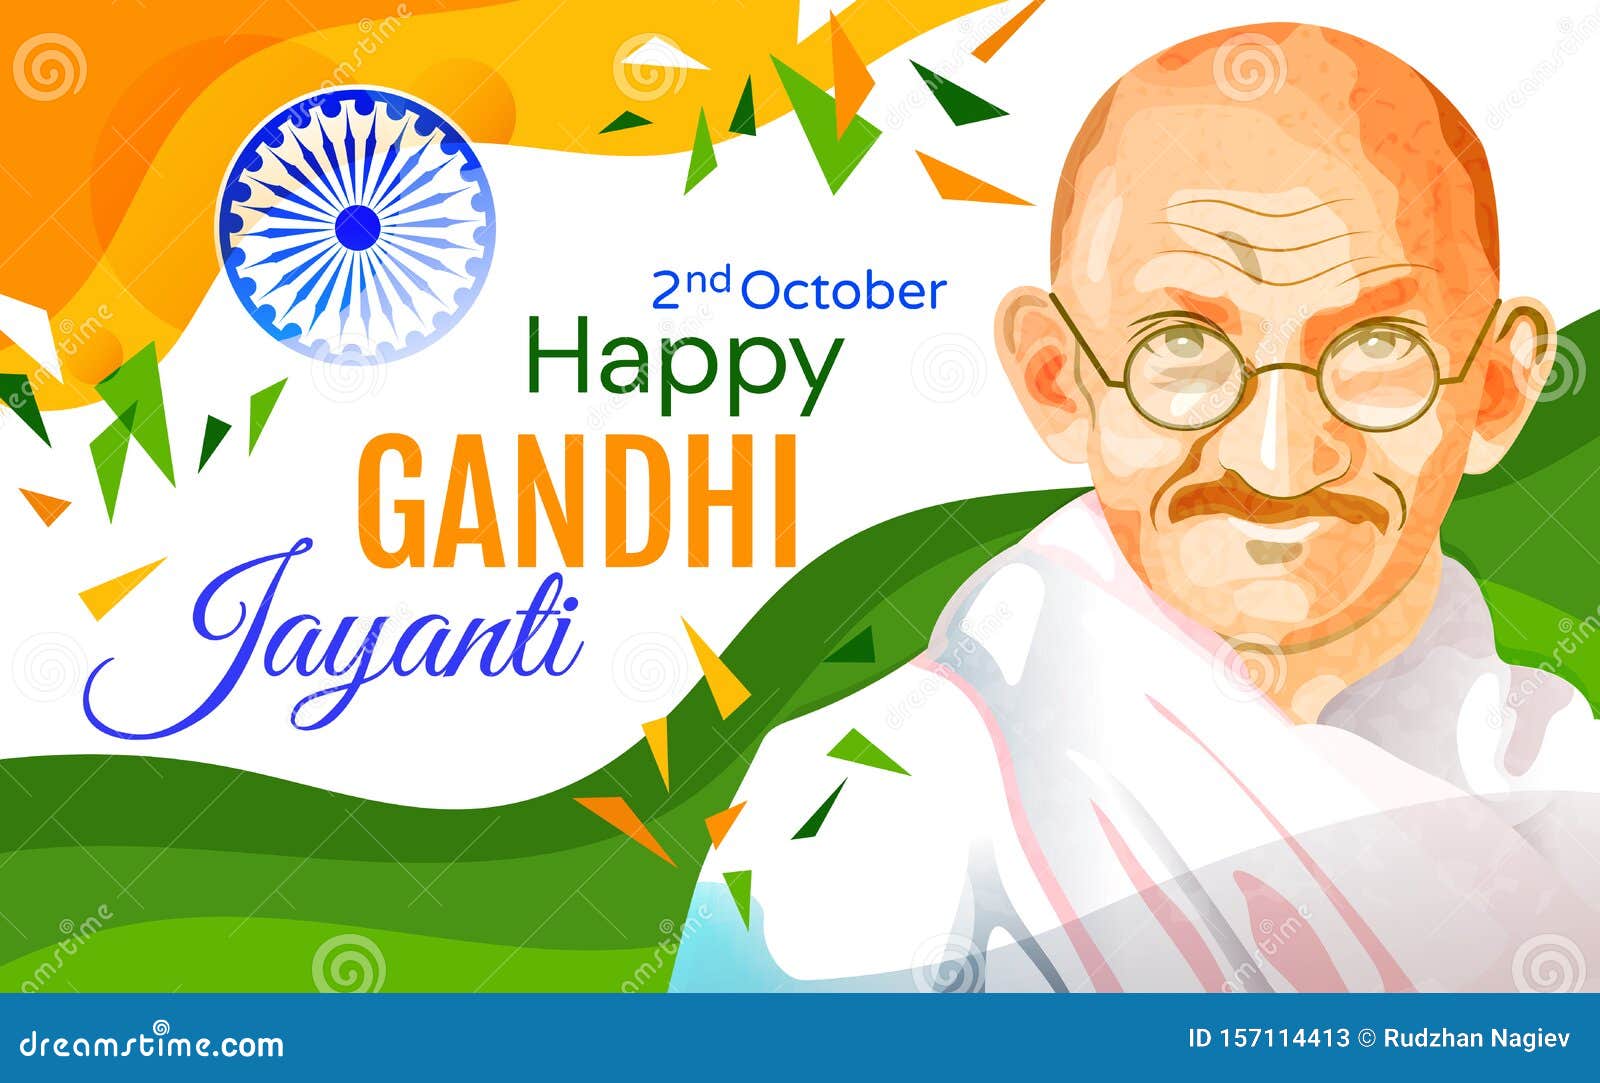 virtual Gandhi Jayanti celebration 🇮🇳🇮🇳🇮🇳